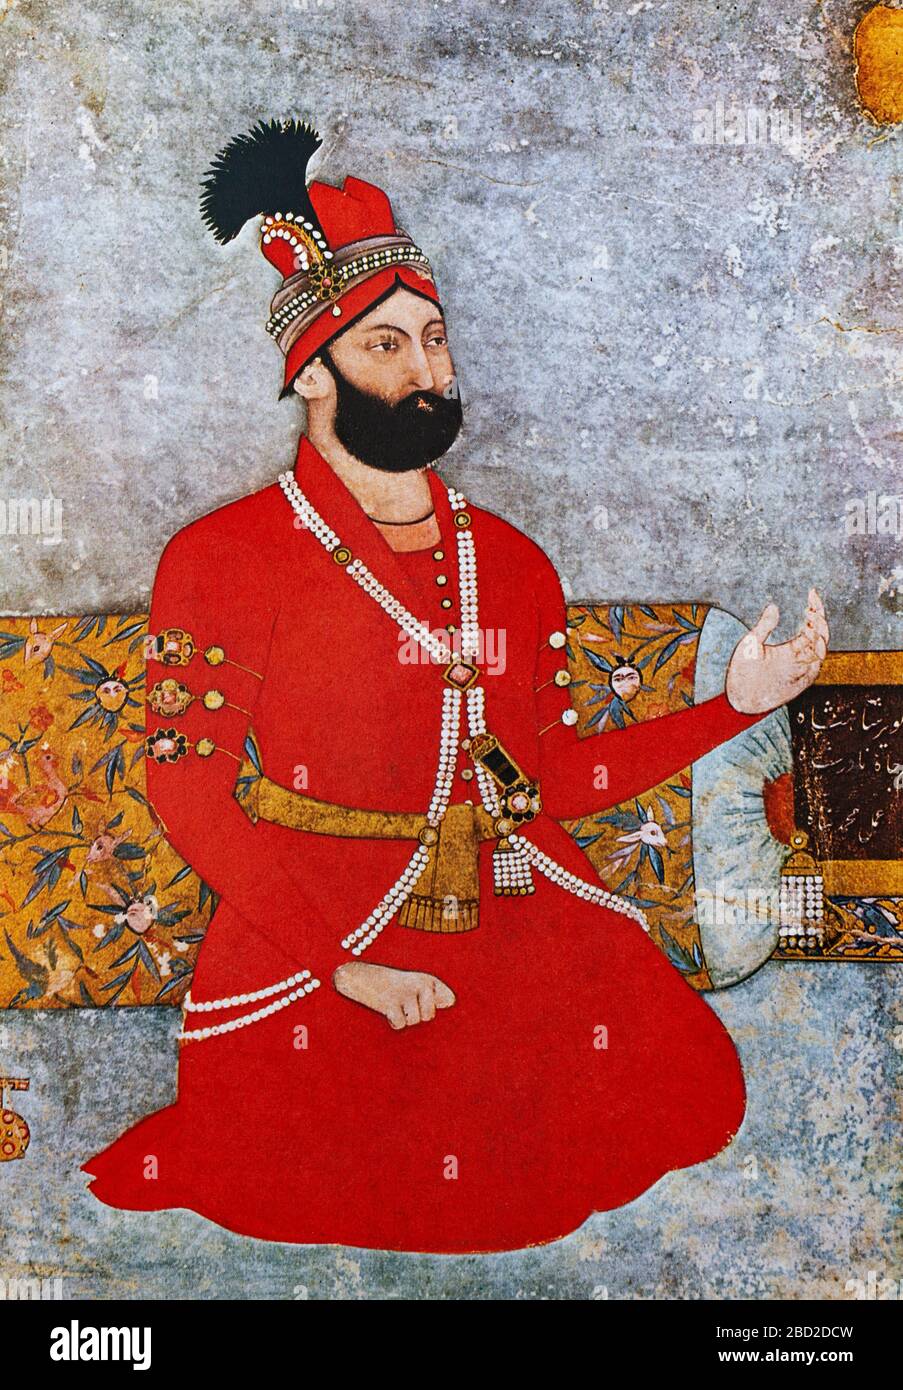 Une minature représentant Nader Shah Afshar (1688-1747), l'un des plus puissants dirigeants iraniens de l'histoire de la nation, dirigeant comme Shah d'Iran (Perse) de 1736 à 1747 lorsqu'il a été assassiné lors d'une rébellion. Ses nombreuses campagnes ont créé un grand empire qui, dans sa plus grande mesure, couvrait brièvement l'Iran, l'Arménie, l'Azerbaïdjan, la Géorgie, le Caucase du Nord, l'Irak, la Turquie, le Turkménistan, l'Afghanistan, l'Ouzbékistan, Bahreïn, le Pakistan, Oman et le golfe Persique. Banque D'Images